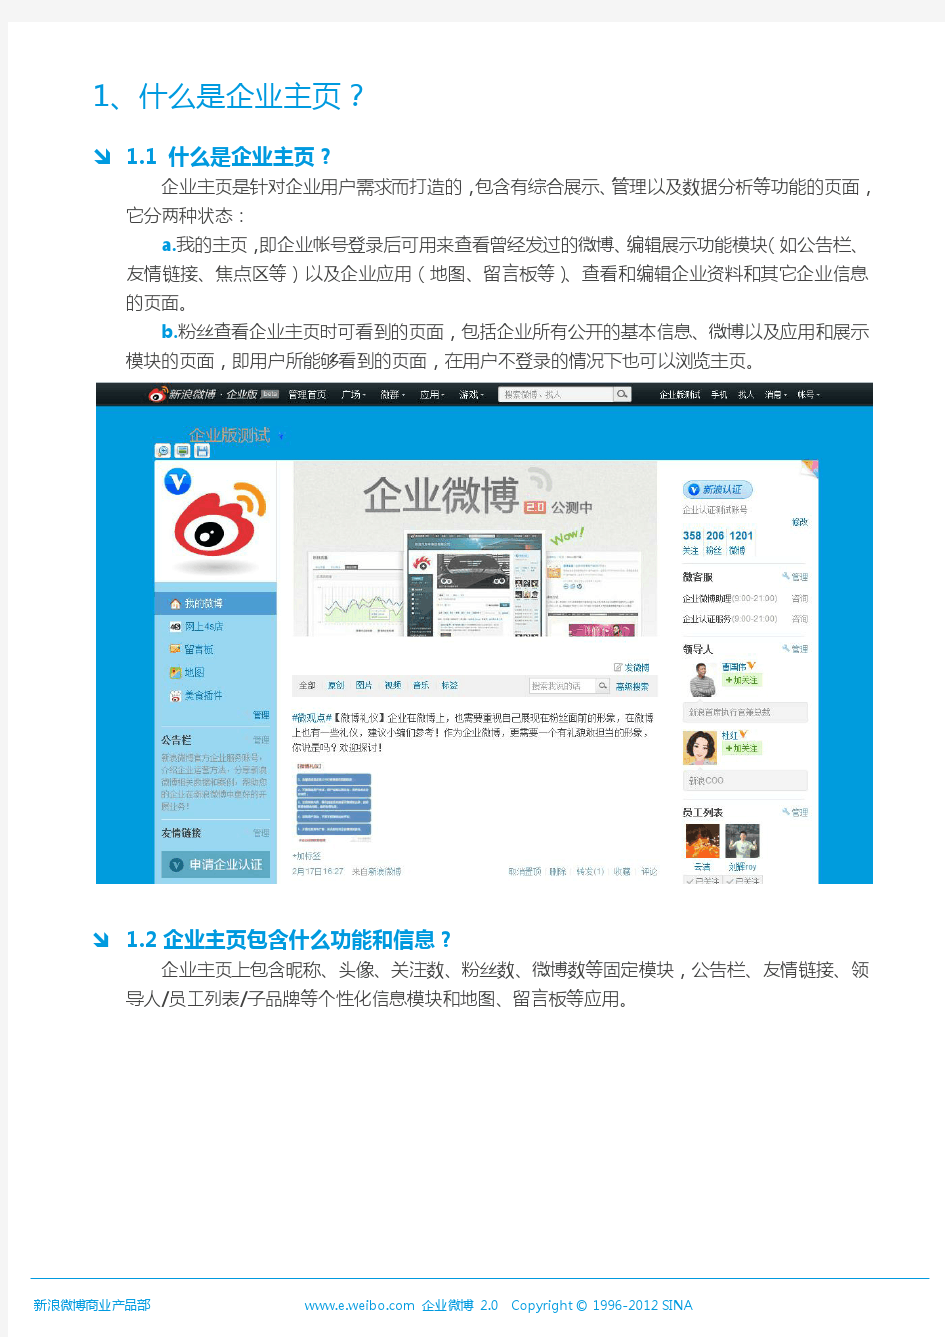 新浪企业微博2.0企业主页模块使用手册